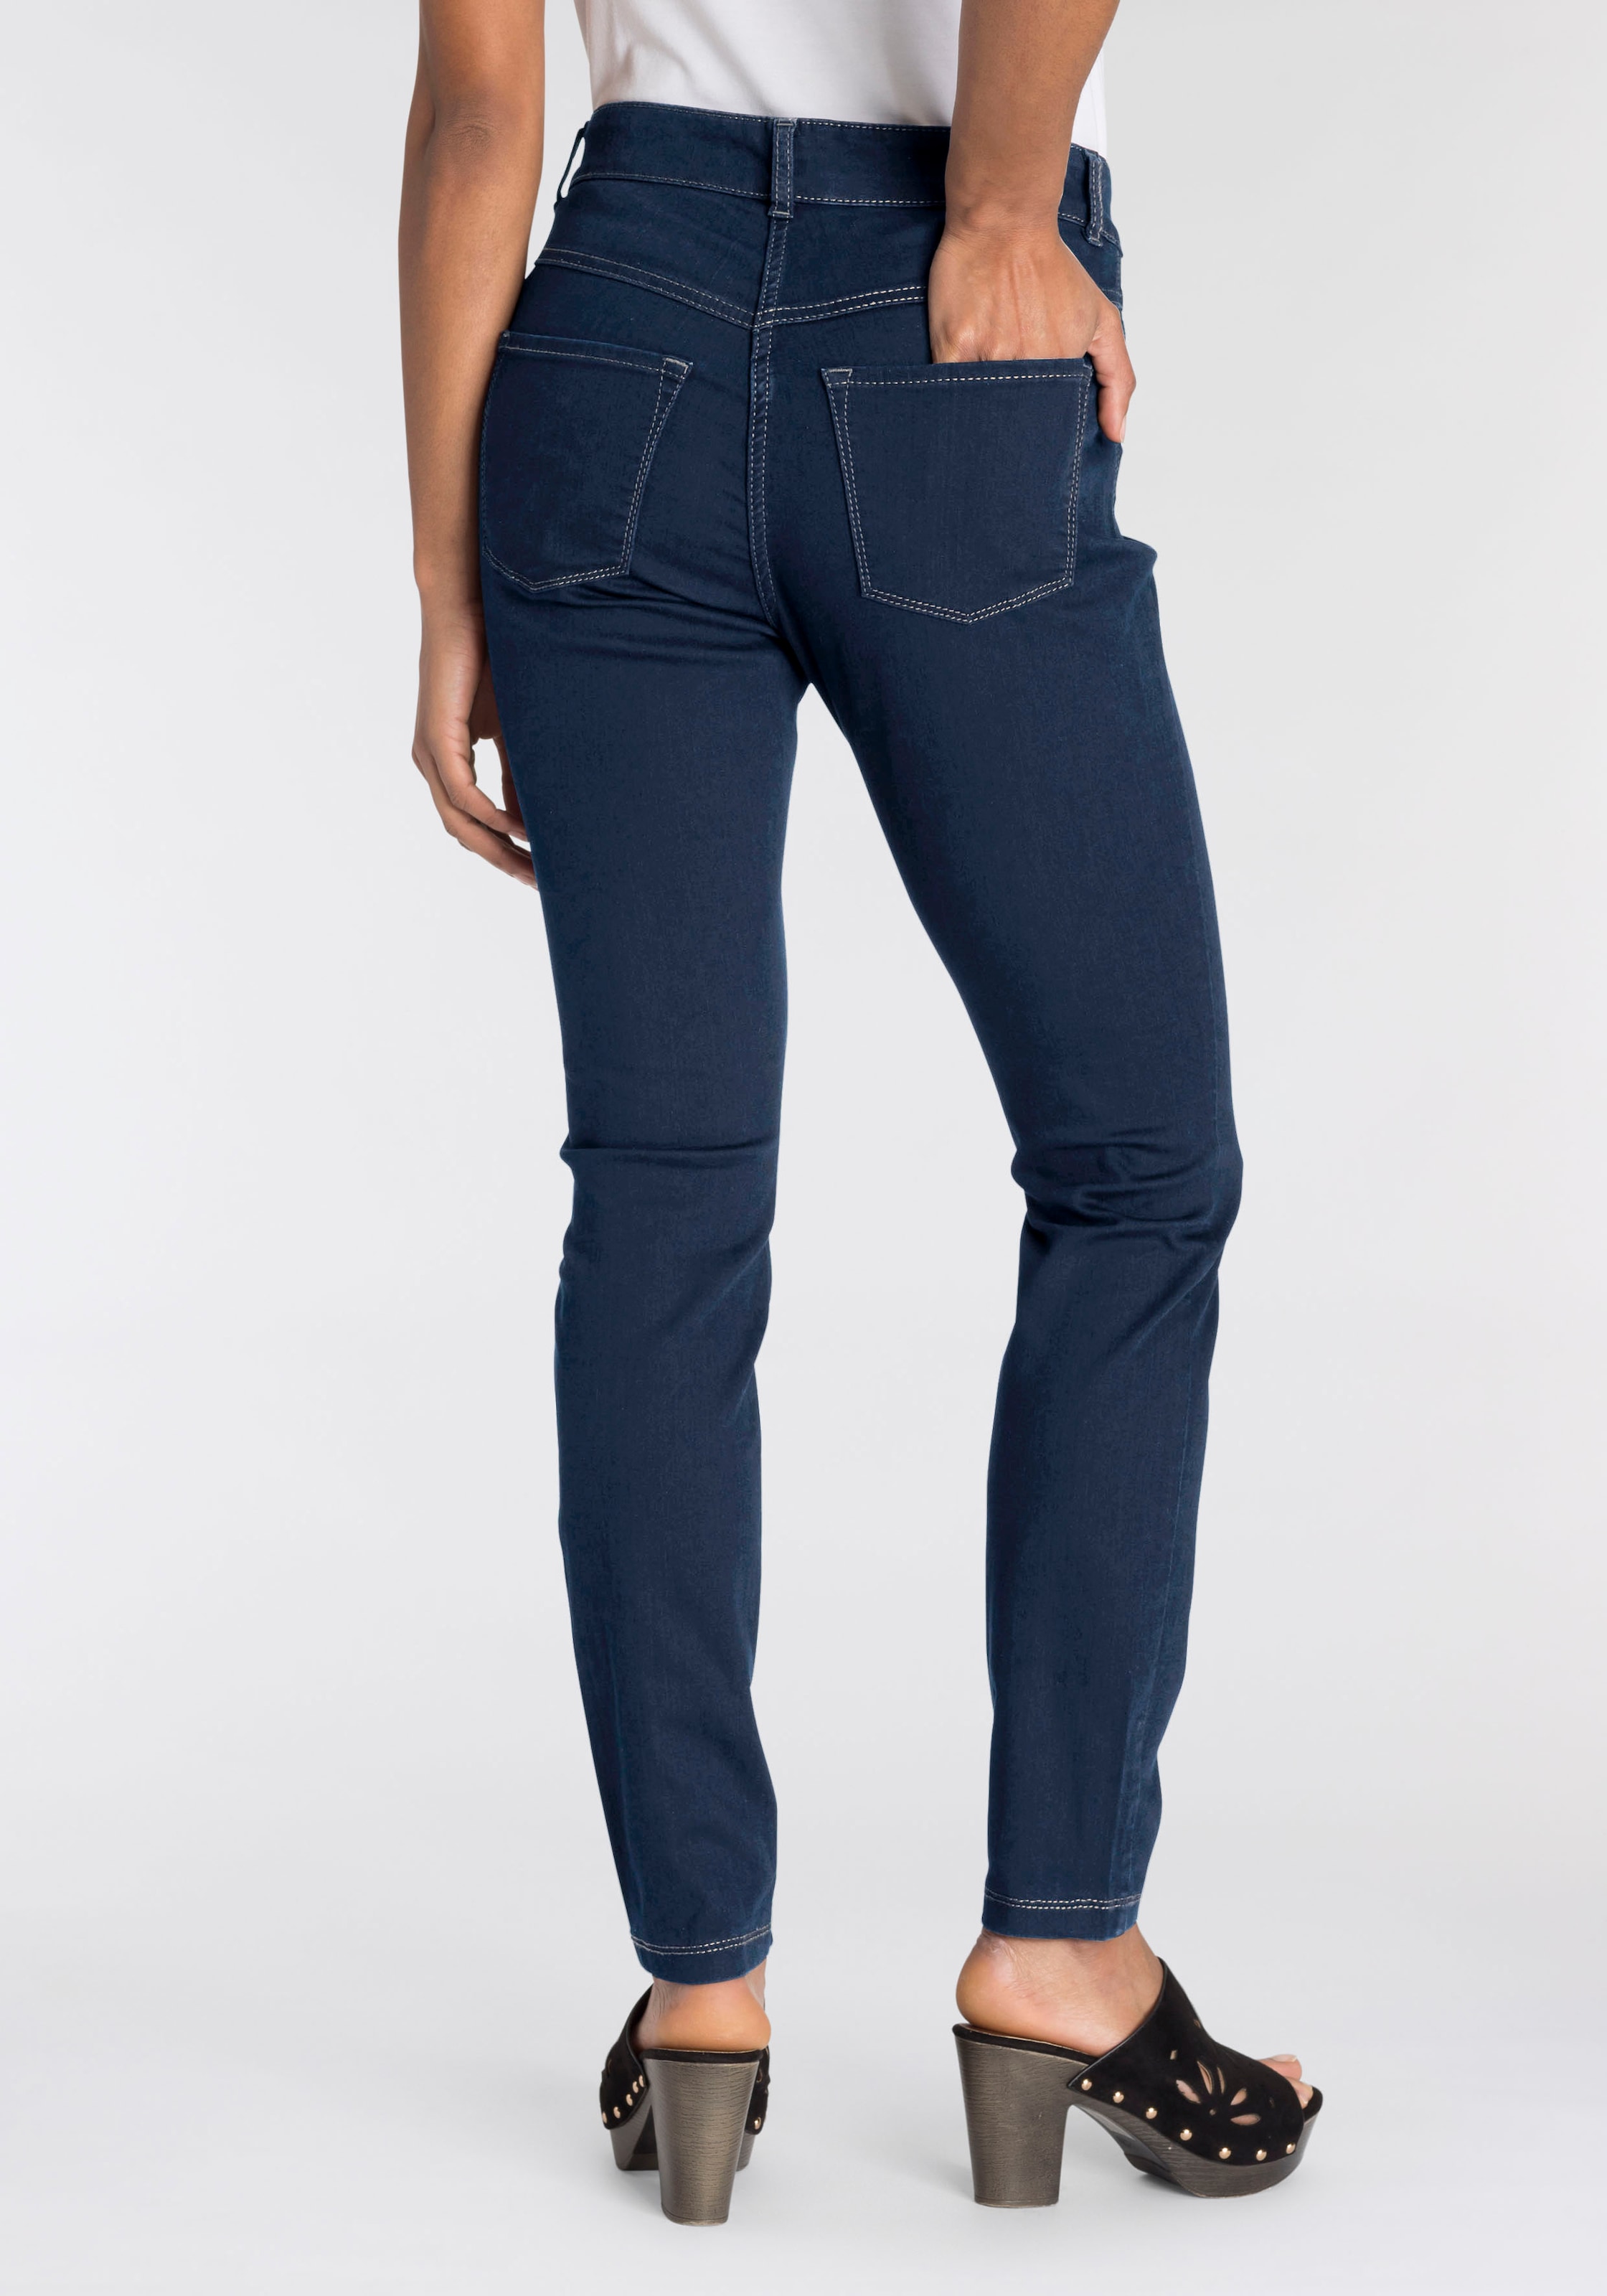 »Hiperstretch-Skinny«, bequem MAC OTTOversand Tag Qualität den sitzt ganzen bei Power-Stretch Skinny-fit-Jeans